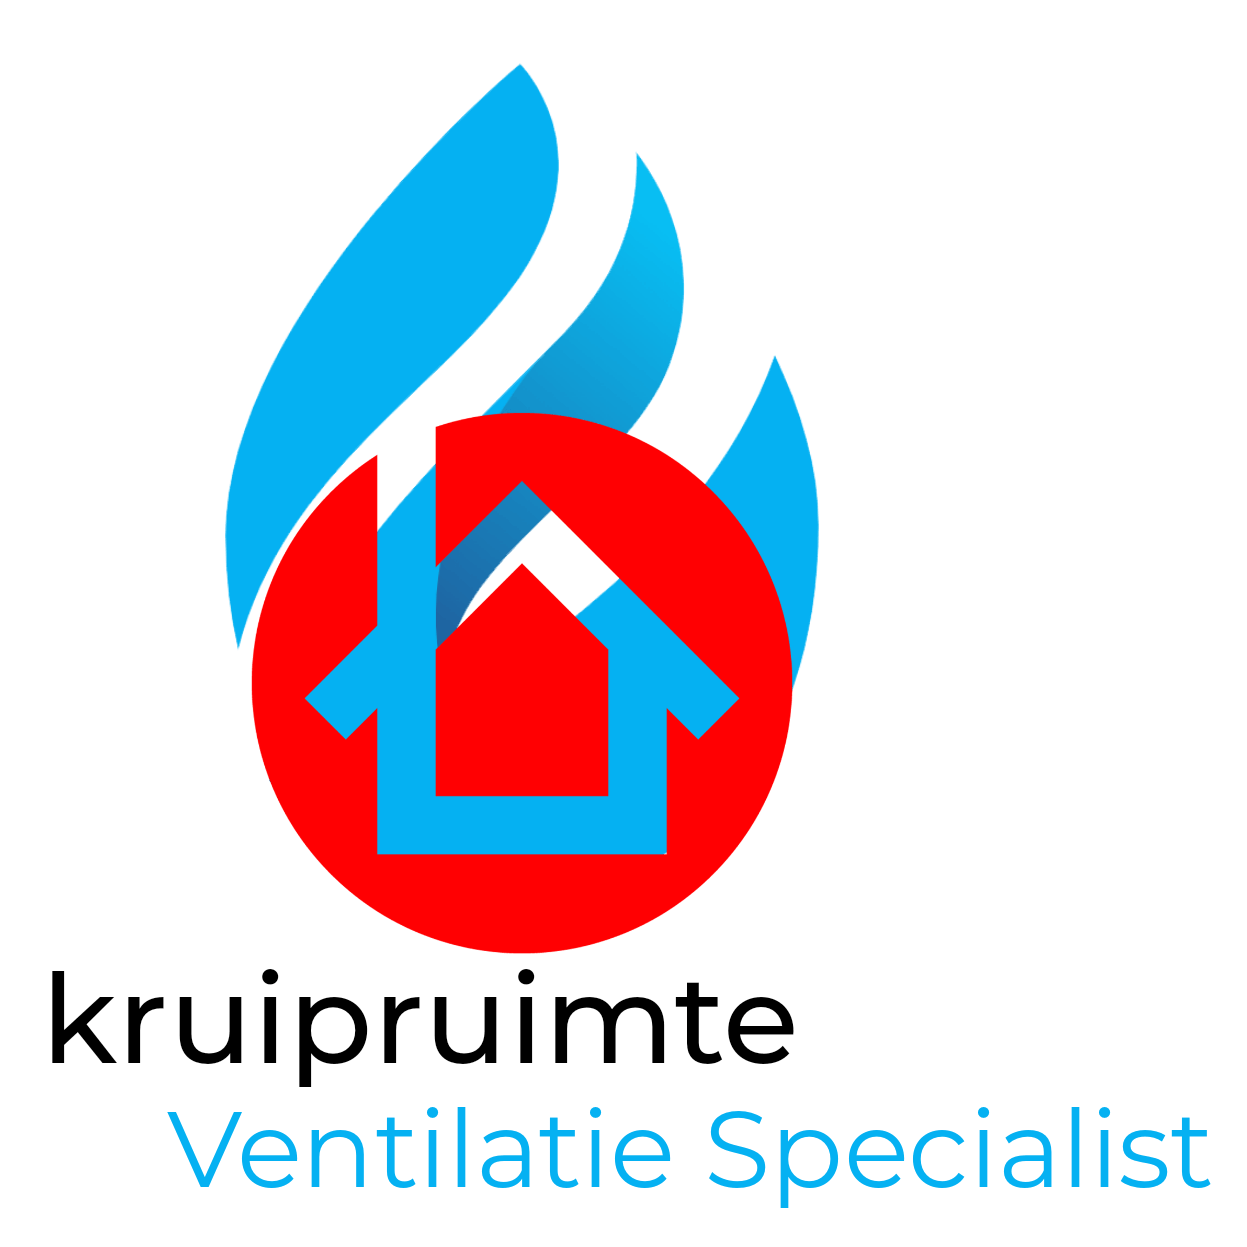 Kruipruimte ventilatie specialist logo